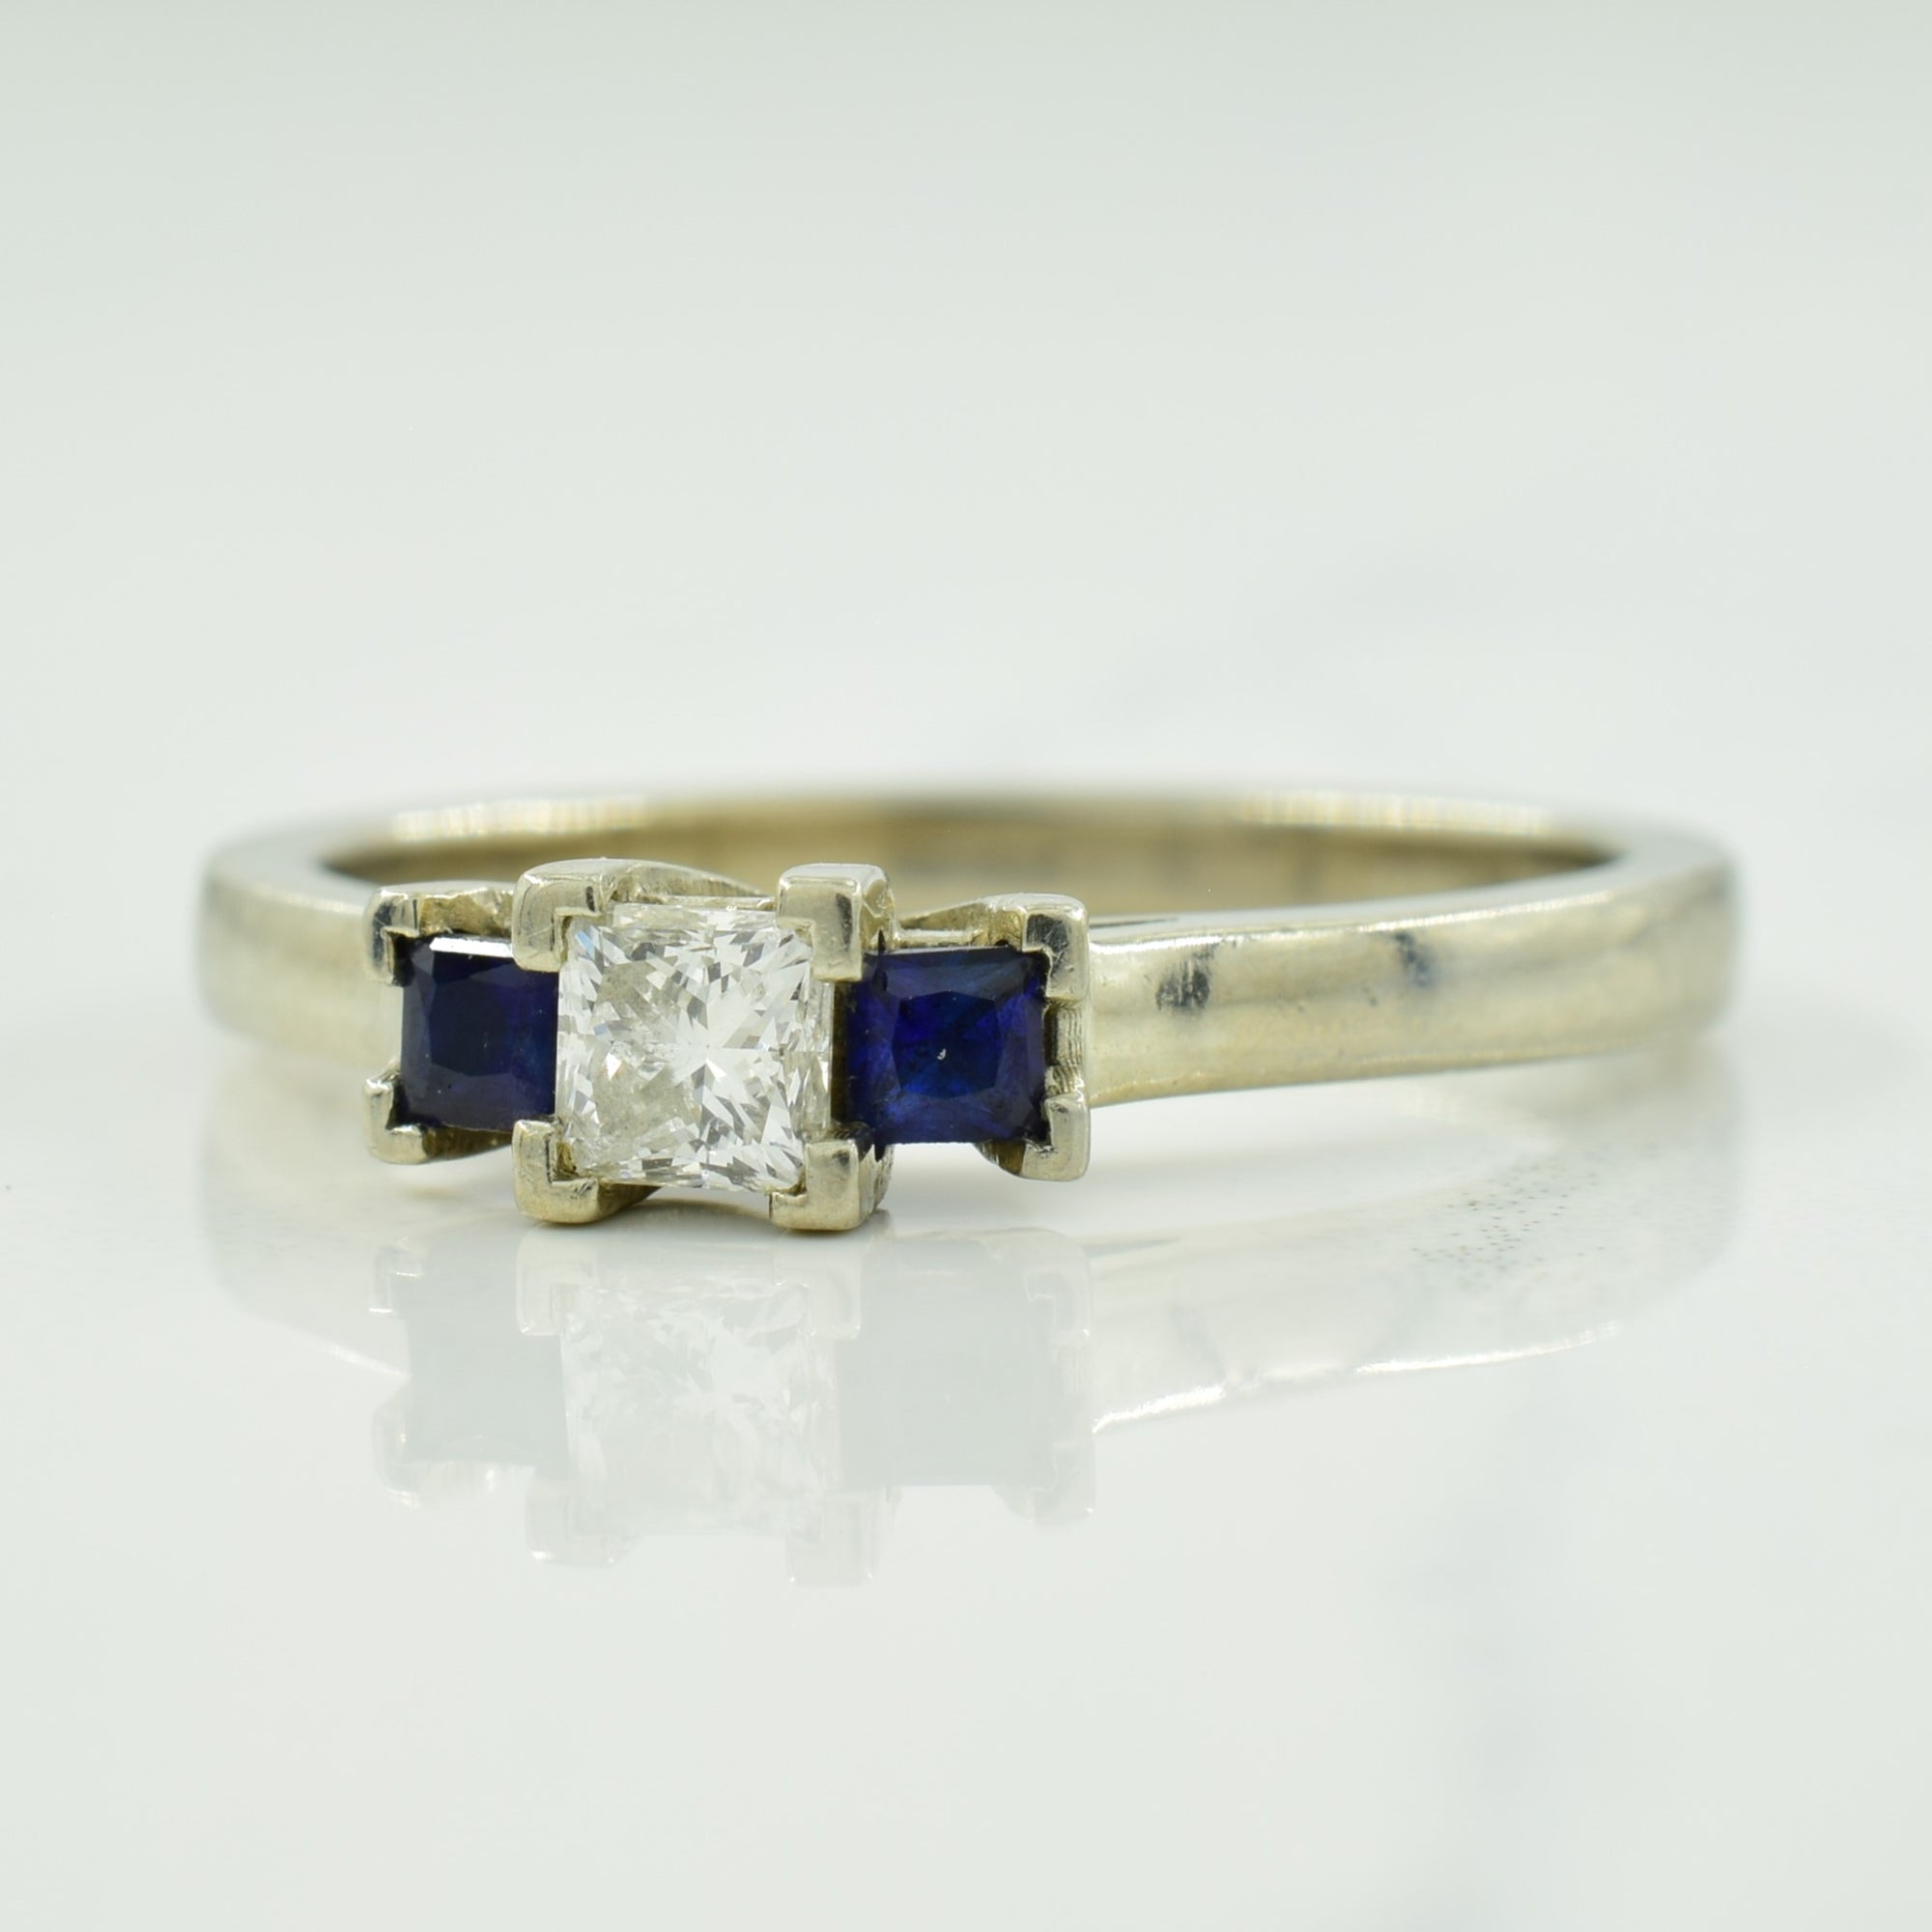 Diamond & Blue Sapphire Ring | 0.24ct, 0.20ctw | SZ 8 |